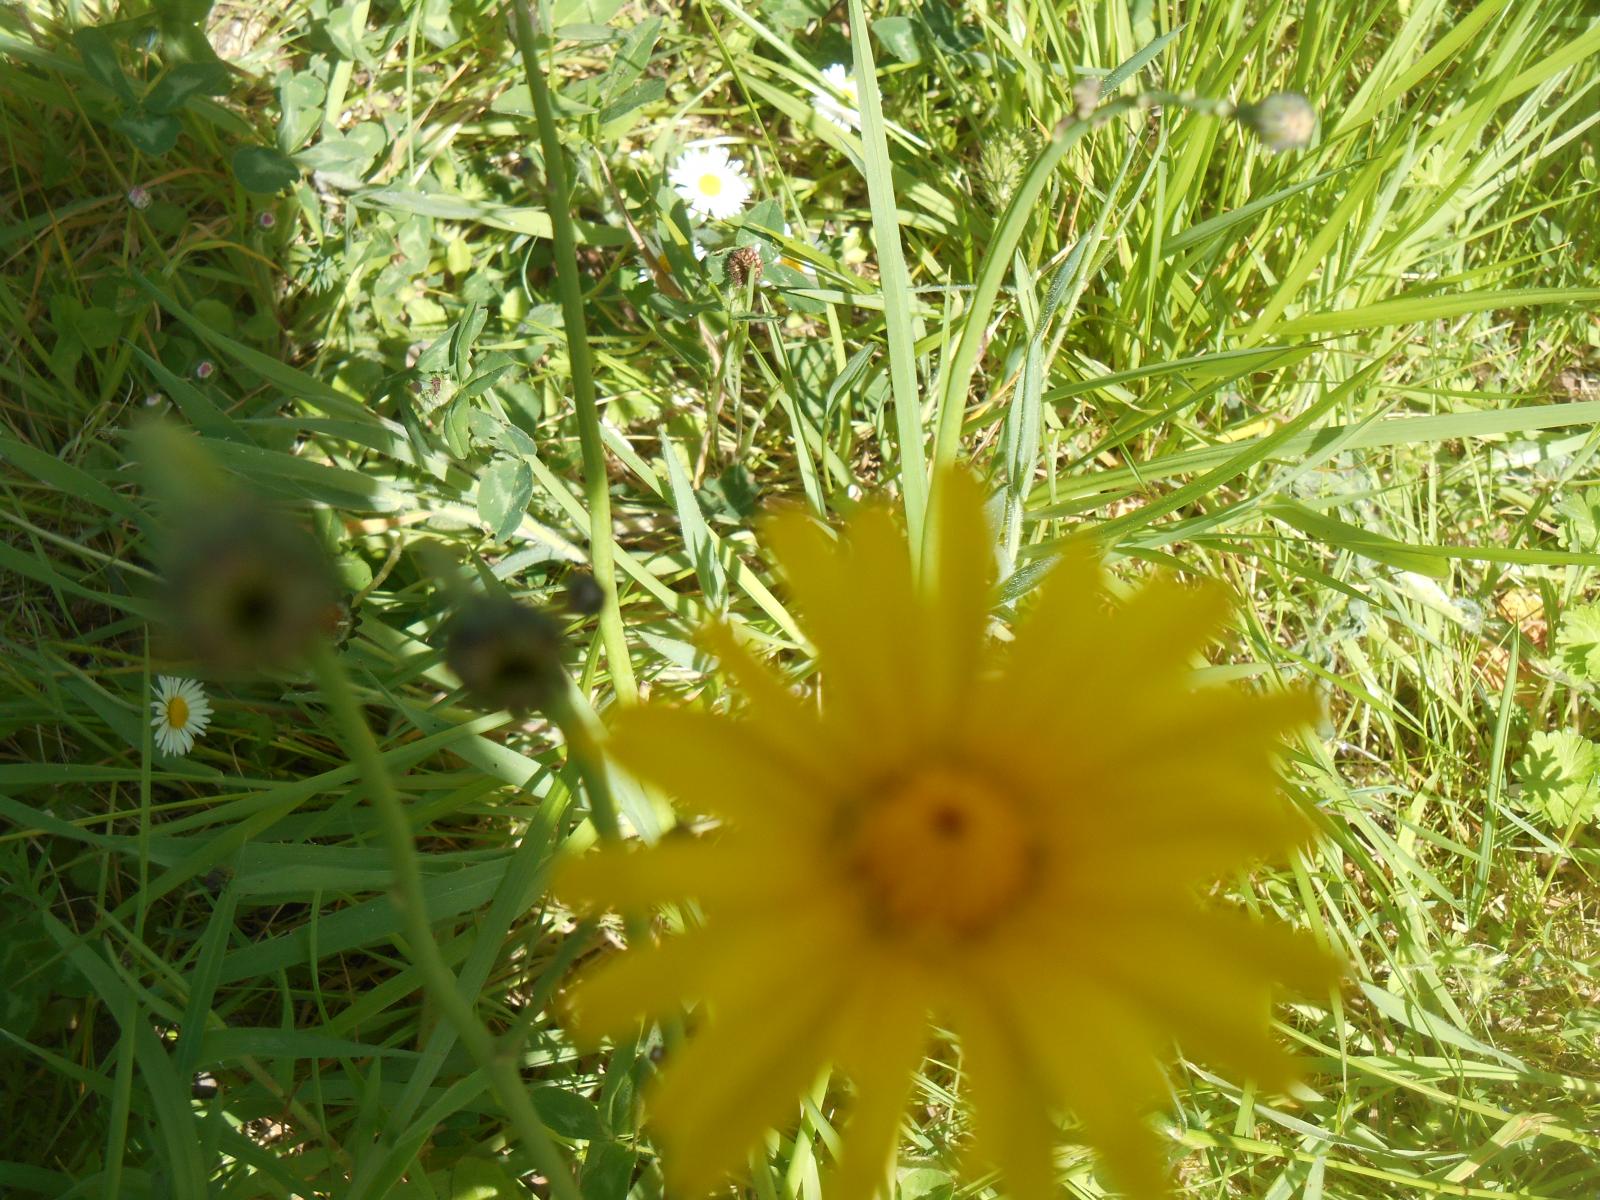 La grosse fleur jaune ( Les Moutiers en Retz )